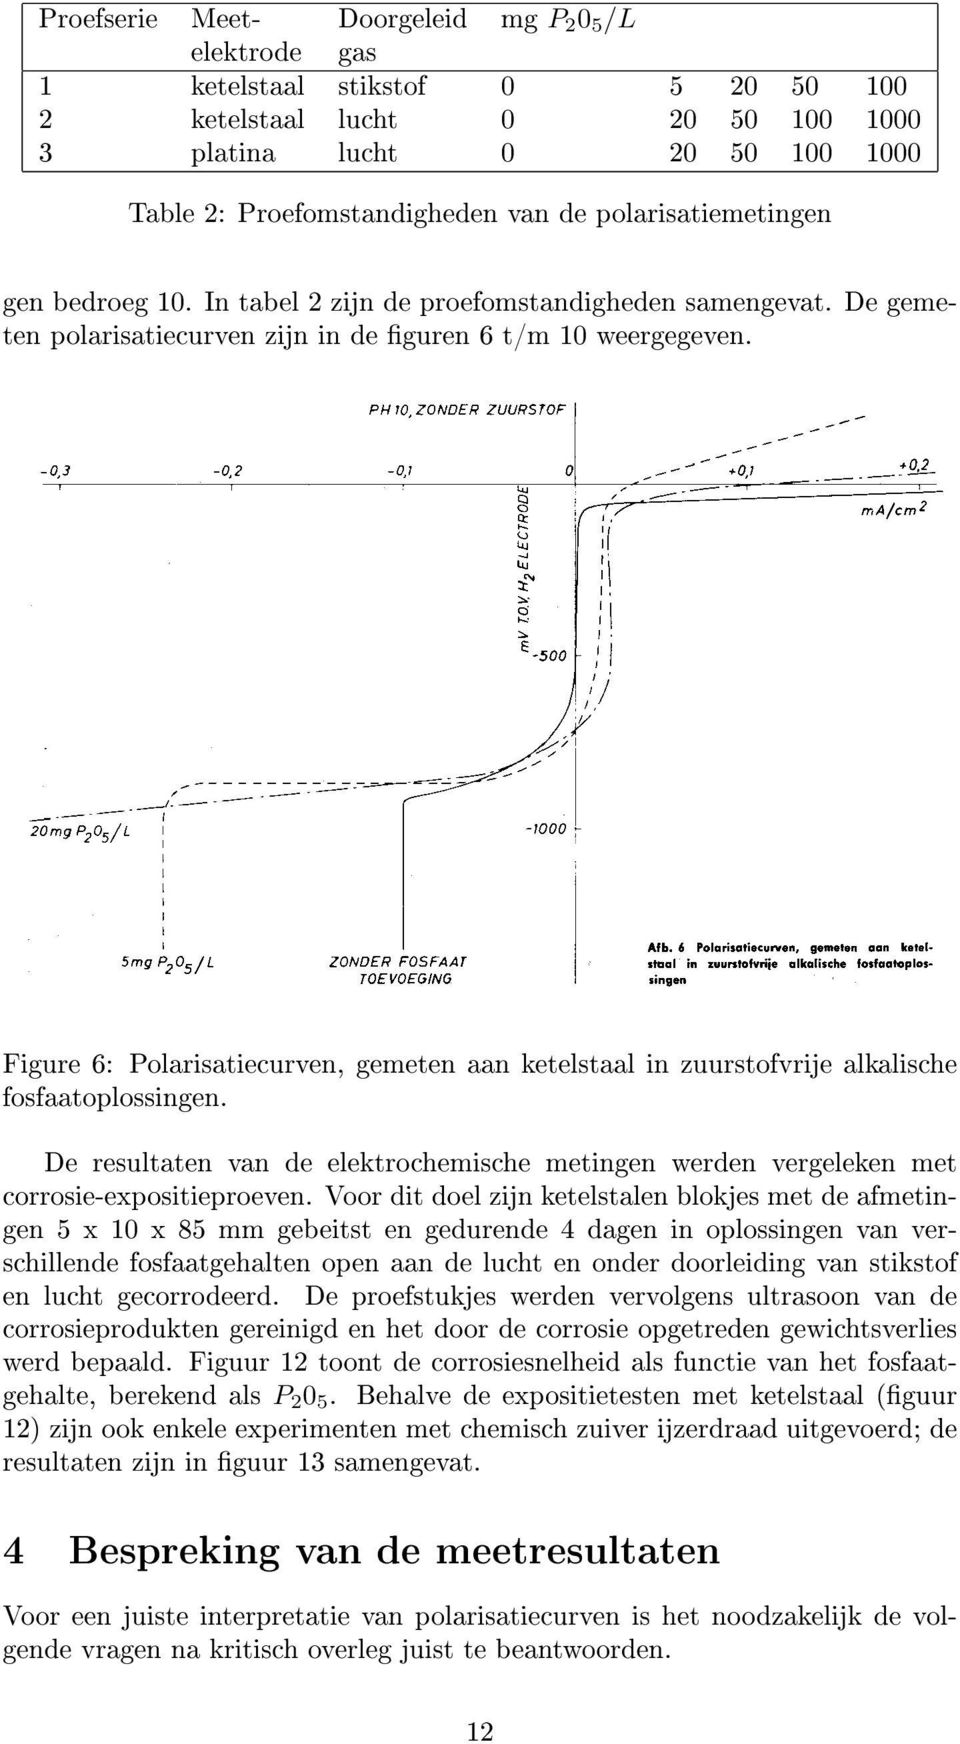 Figure 6: Polarisatiecurven, gemeten aan ketelstaal in zuurstofvrije alkalische fosfaatoplossingen. De resultaten van de elektrochemische metingen werden vergeleken met corrosie-expositieproeven.